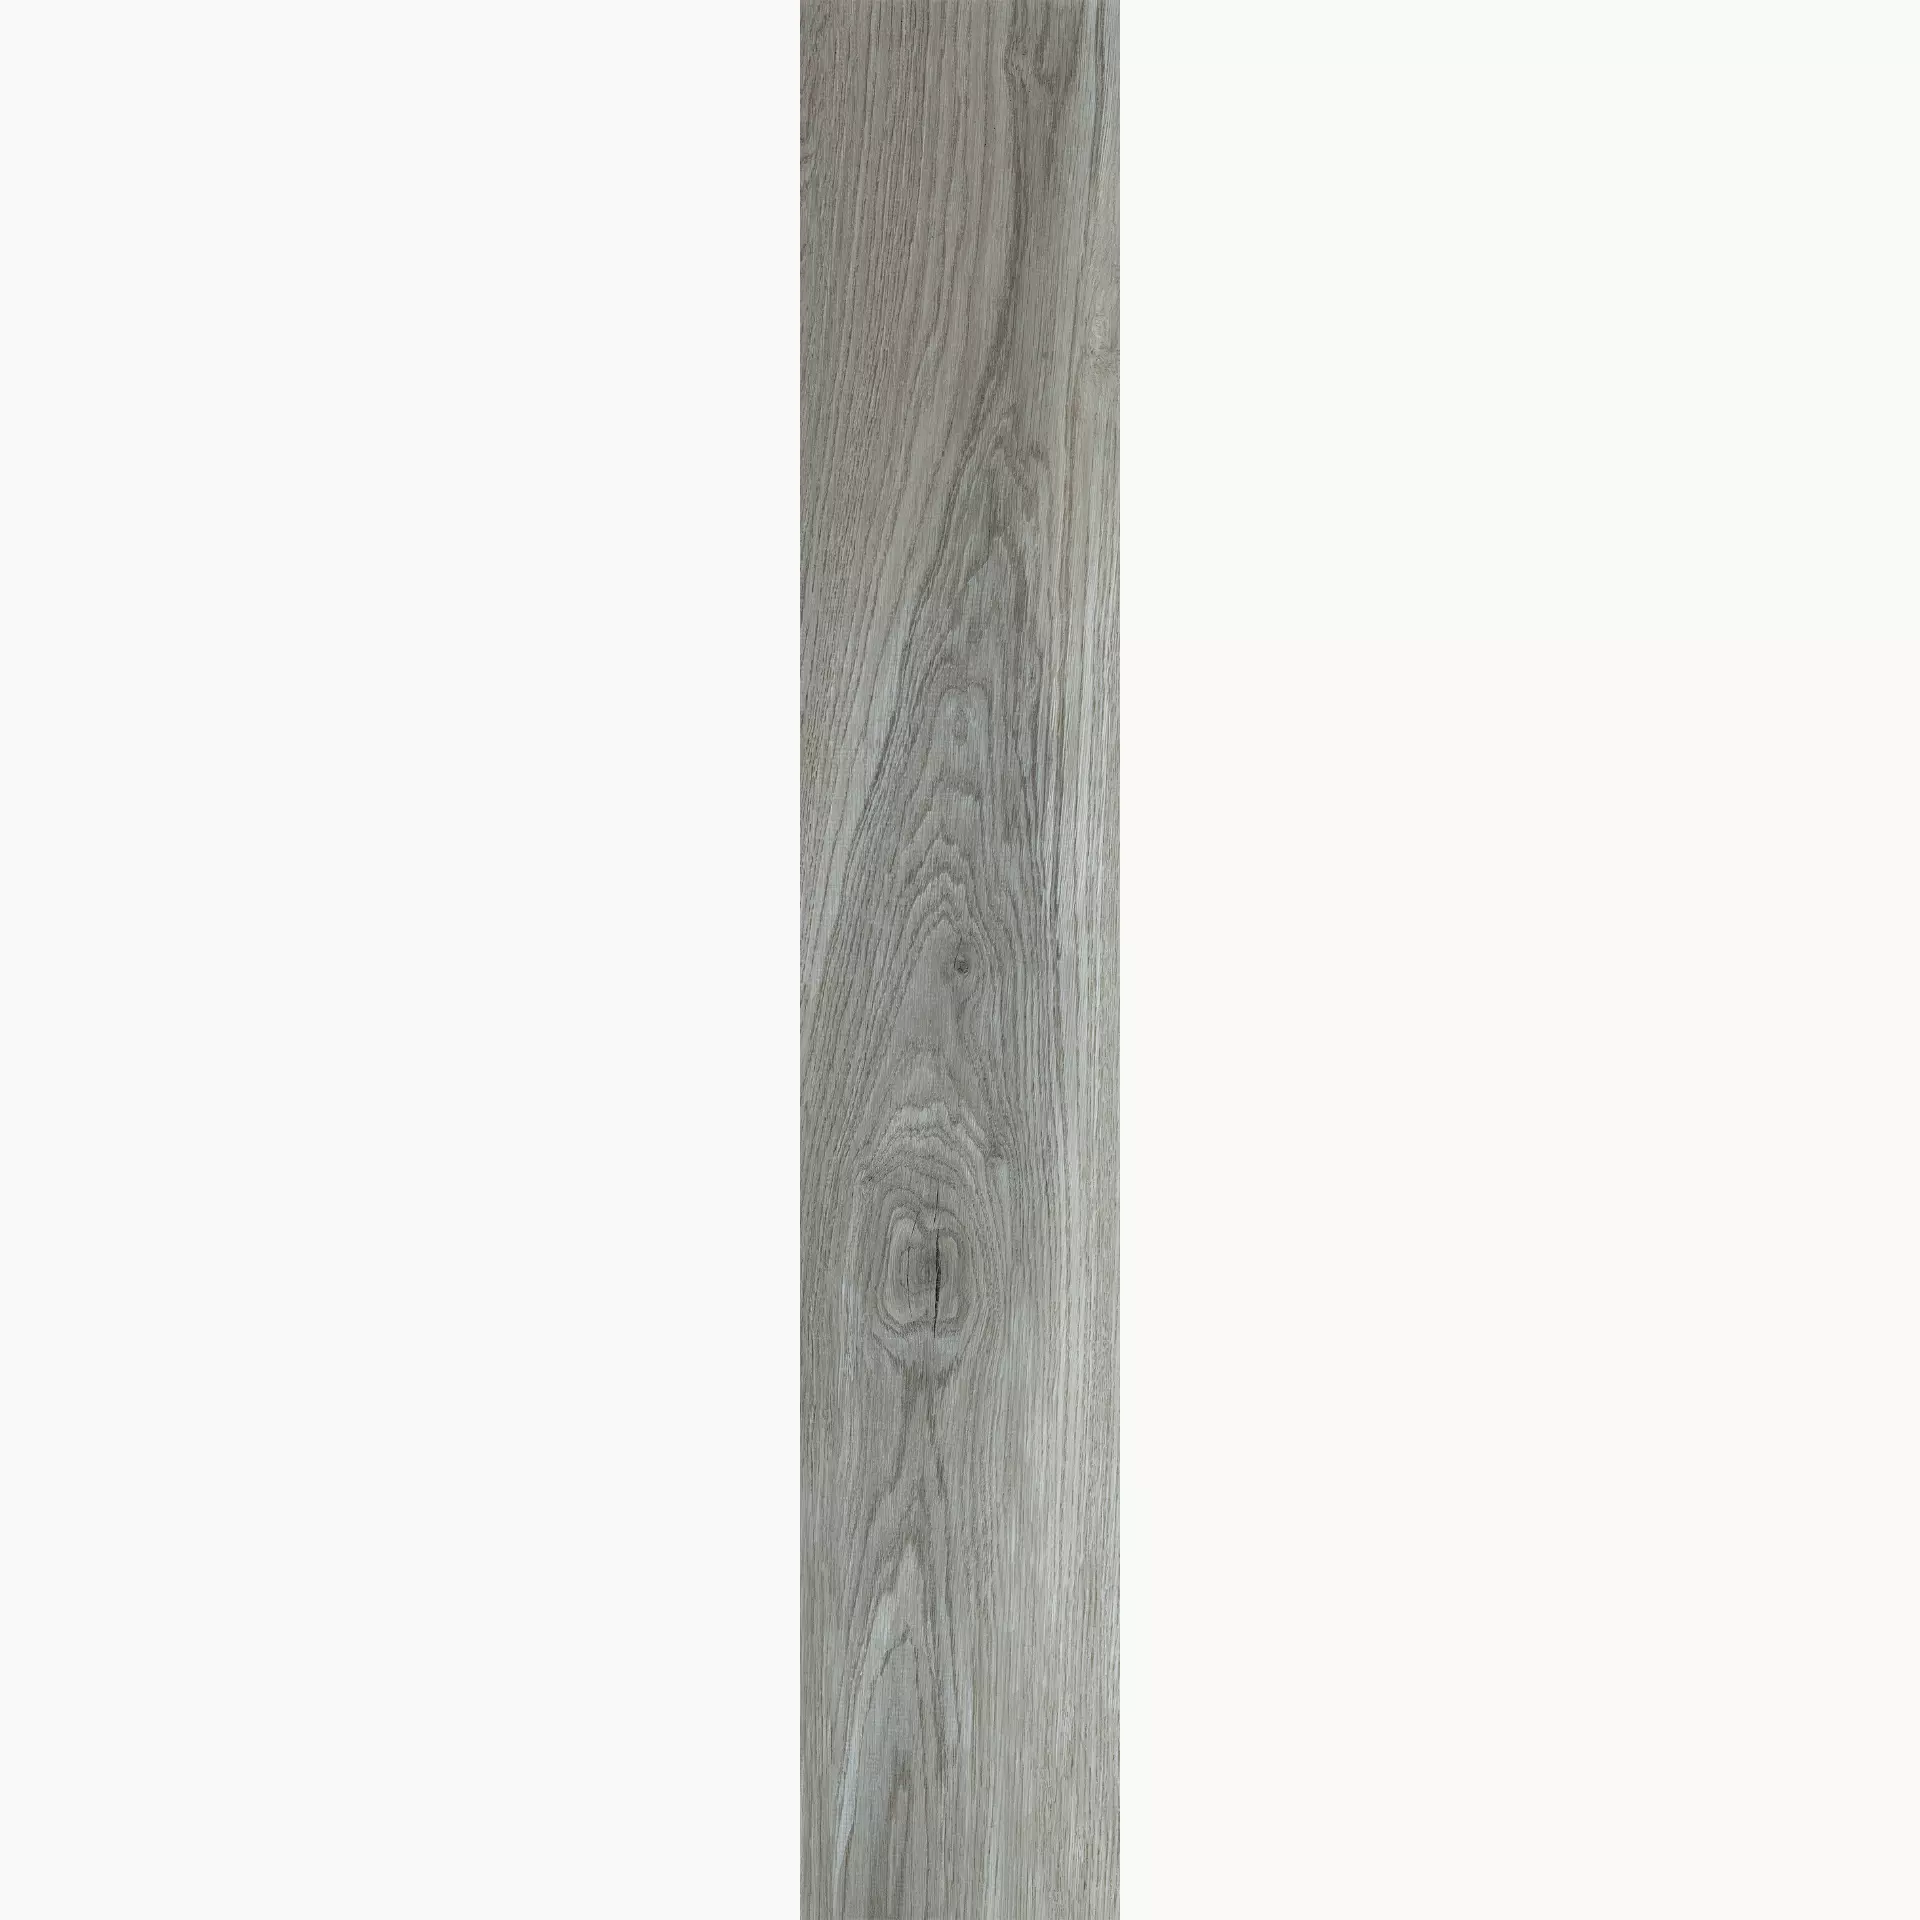 Florim Hi-Wood Of Cerim Smoke Grey Naturale – Matt 759963 20x120cm rectified 9mm